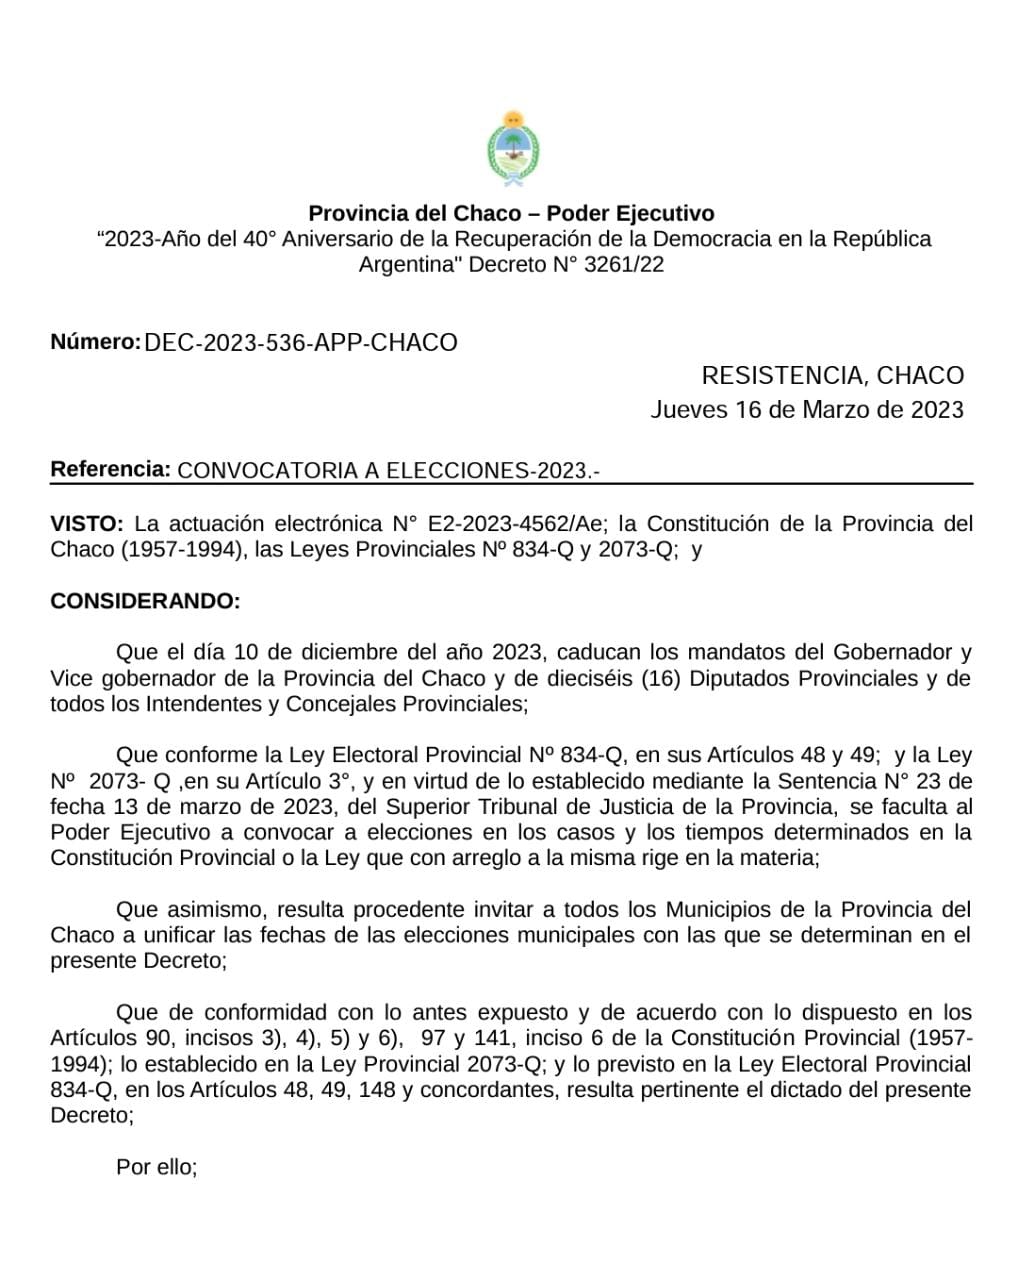 *CHACO DEFINIÓ EL CALENDARIO ELECTORAL PARA 2023*